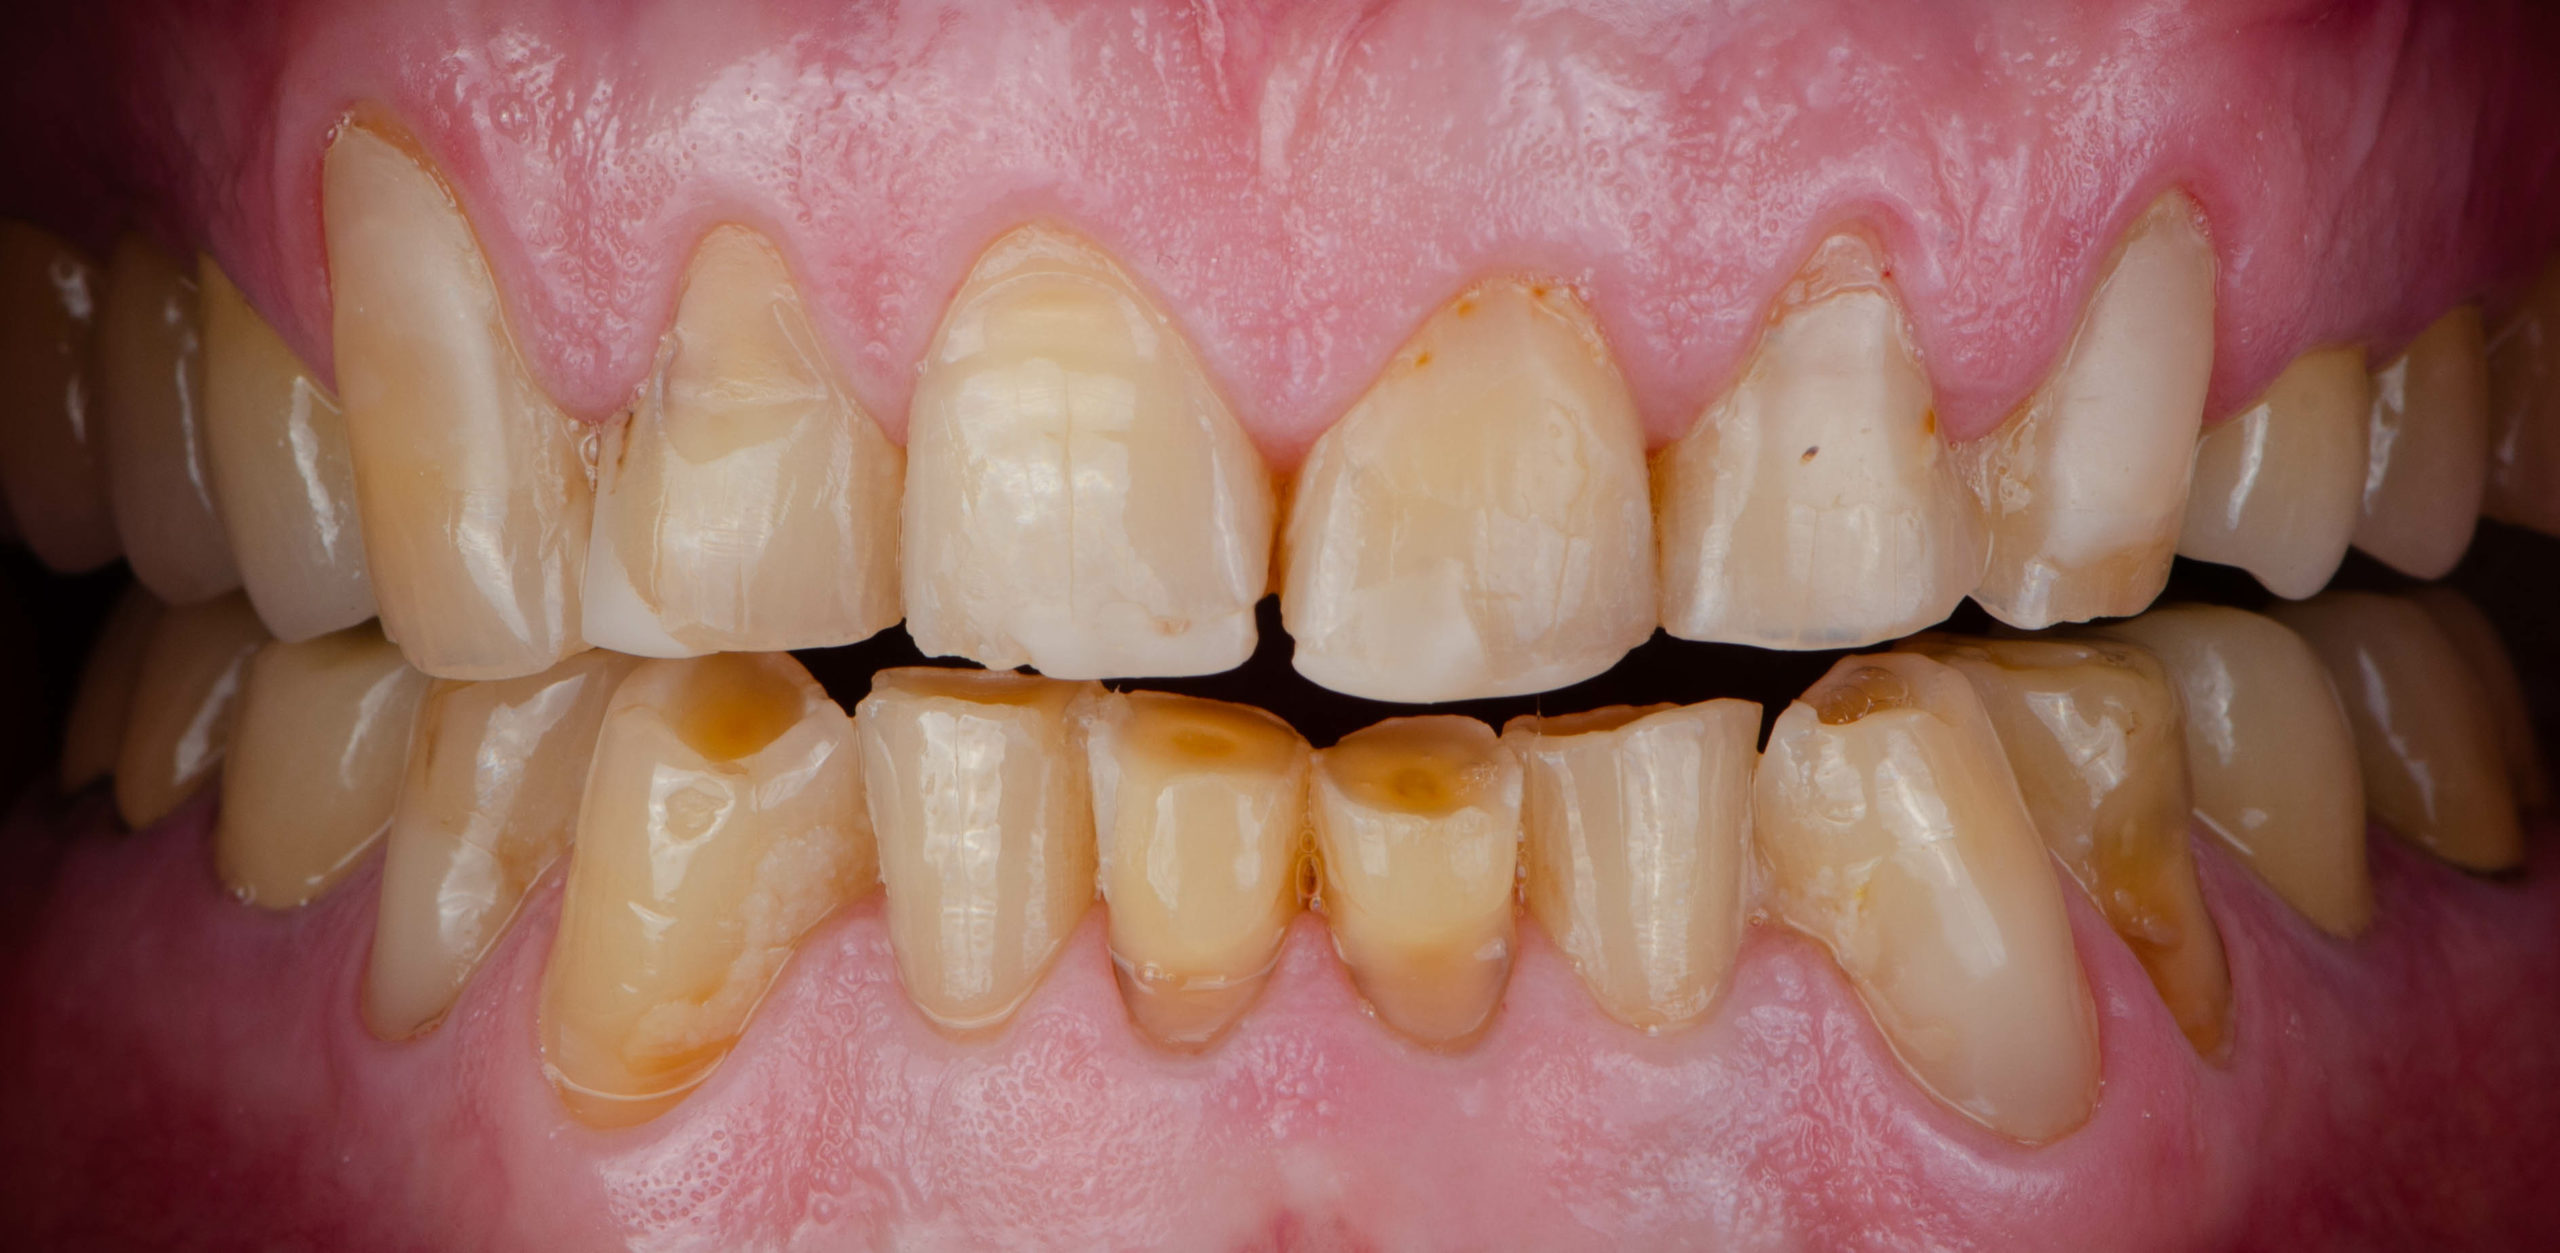 skutki nieleczonego bruksizmu starcie i zniszczenie zębów